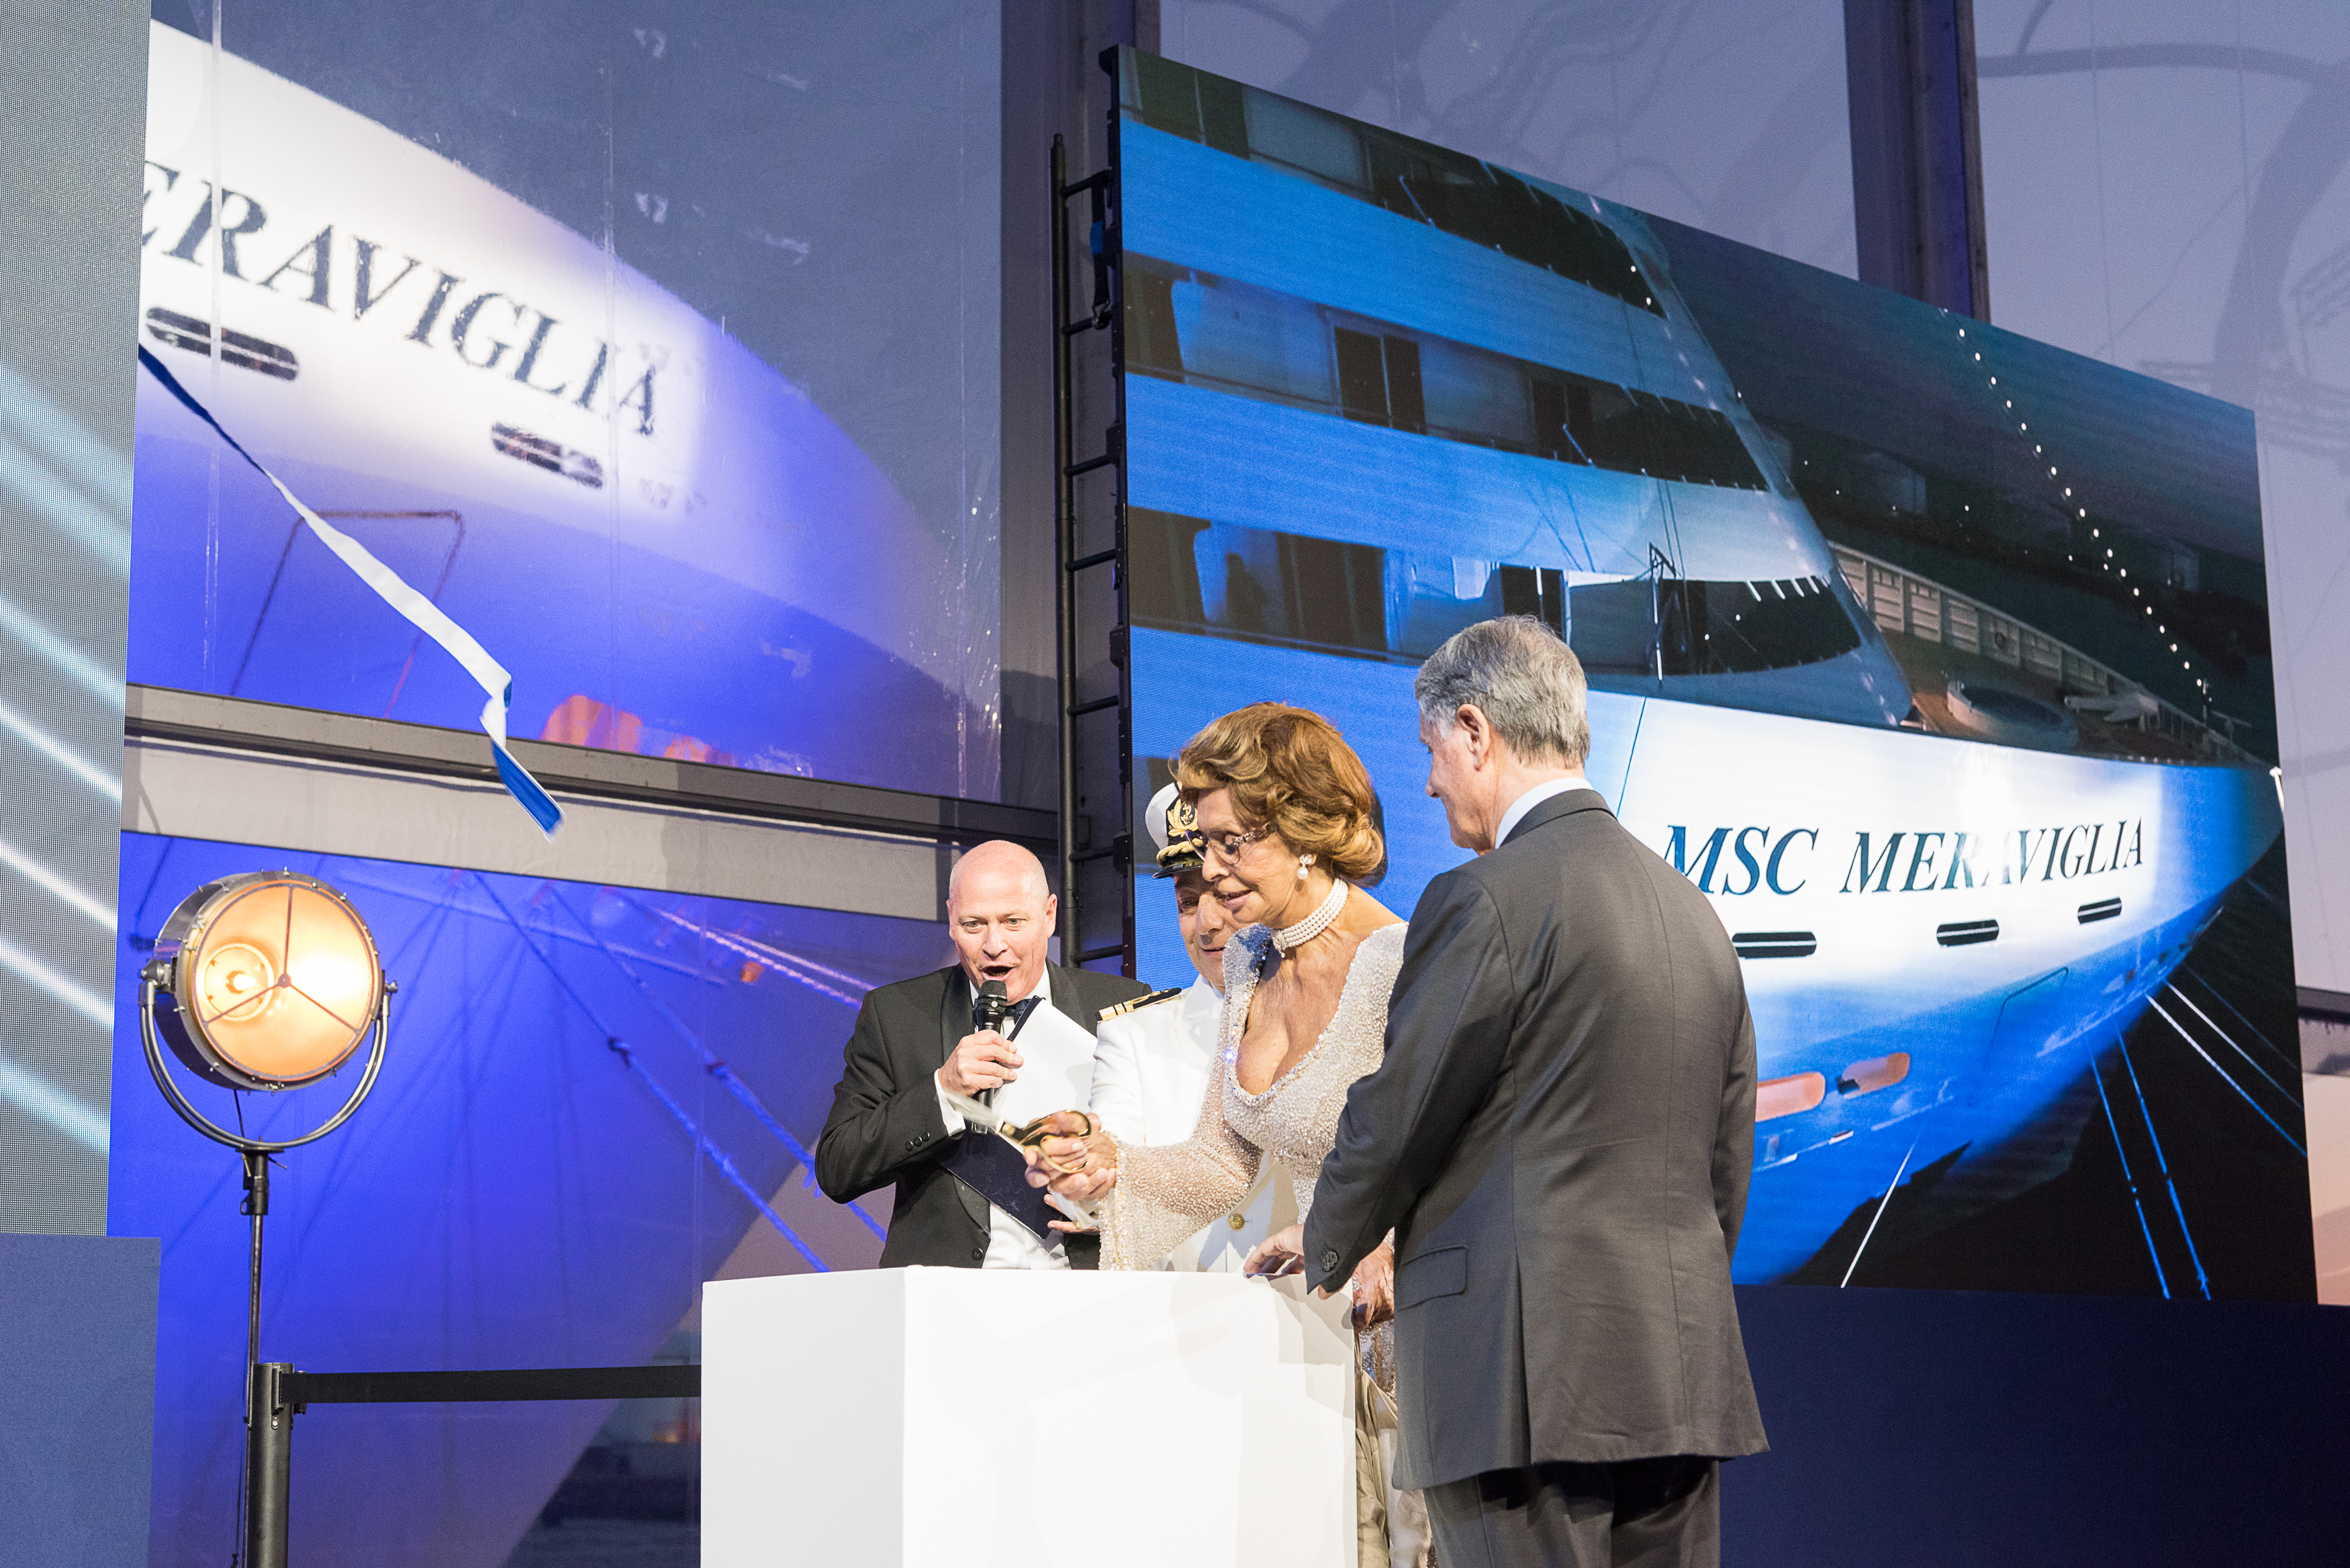 Godmother Sophia Loren cuts the ribbon with MSC Group Executive Chairman Gianluigi Aponte